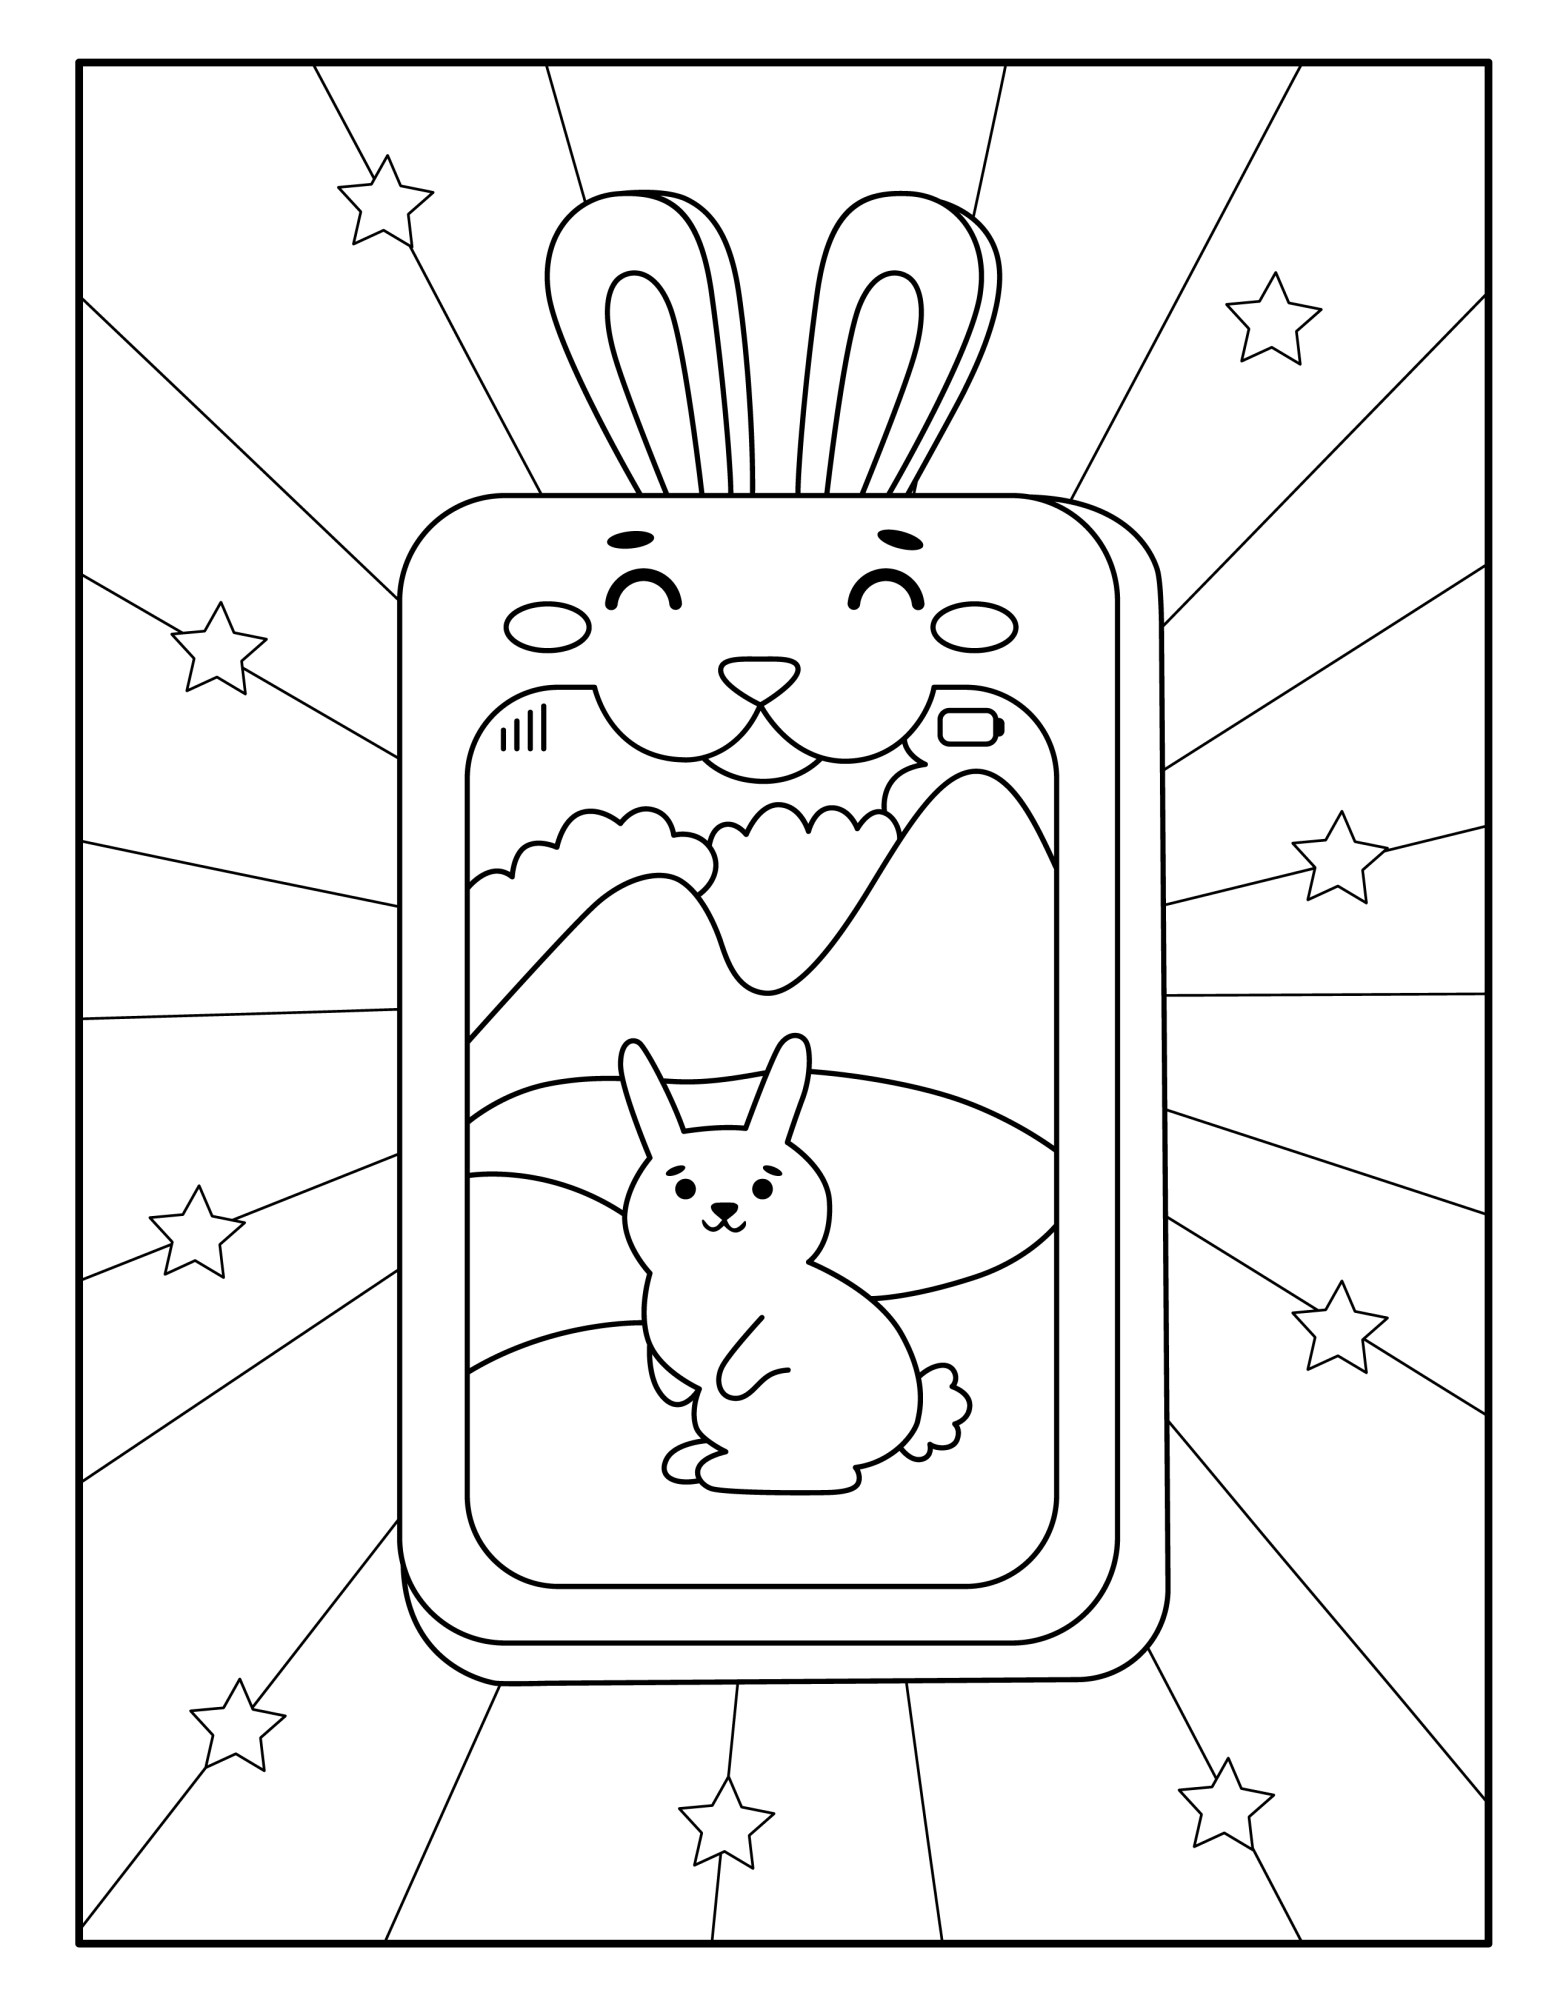 Раскраска для детей: игрушка смартфон с зайчиком